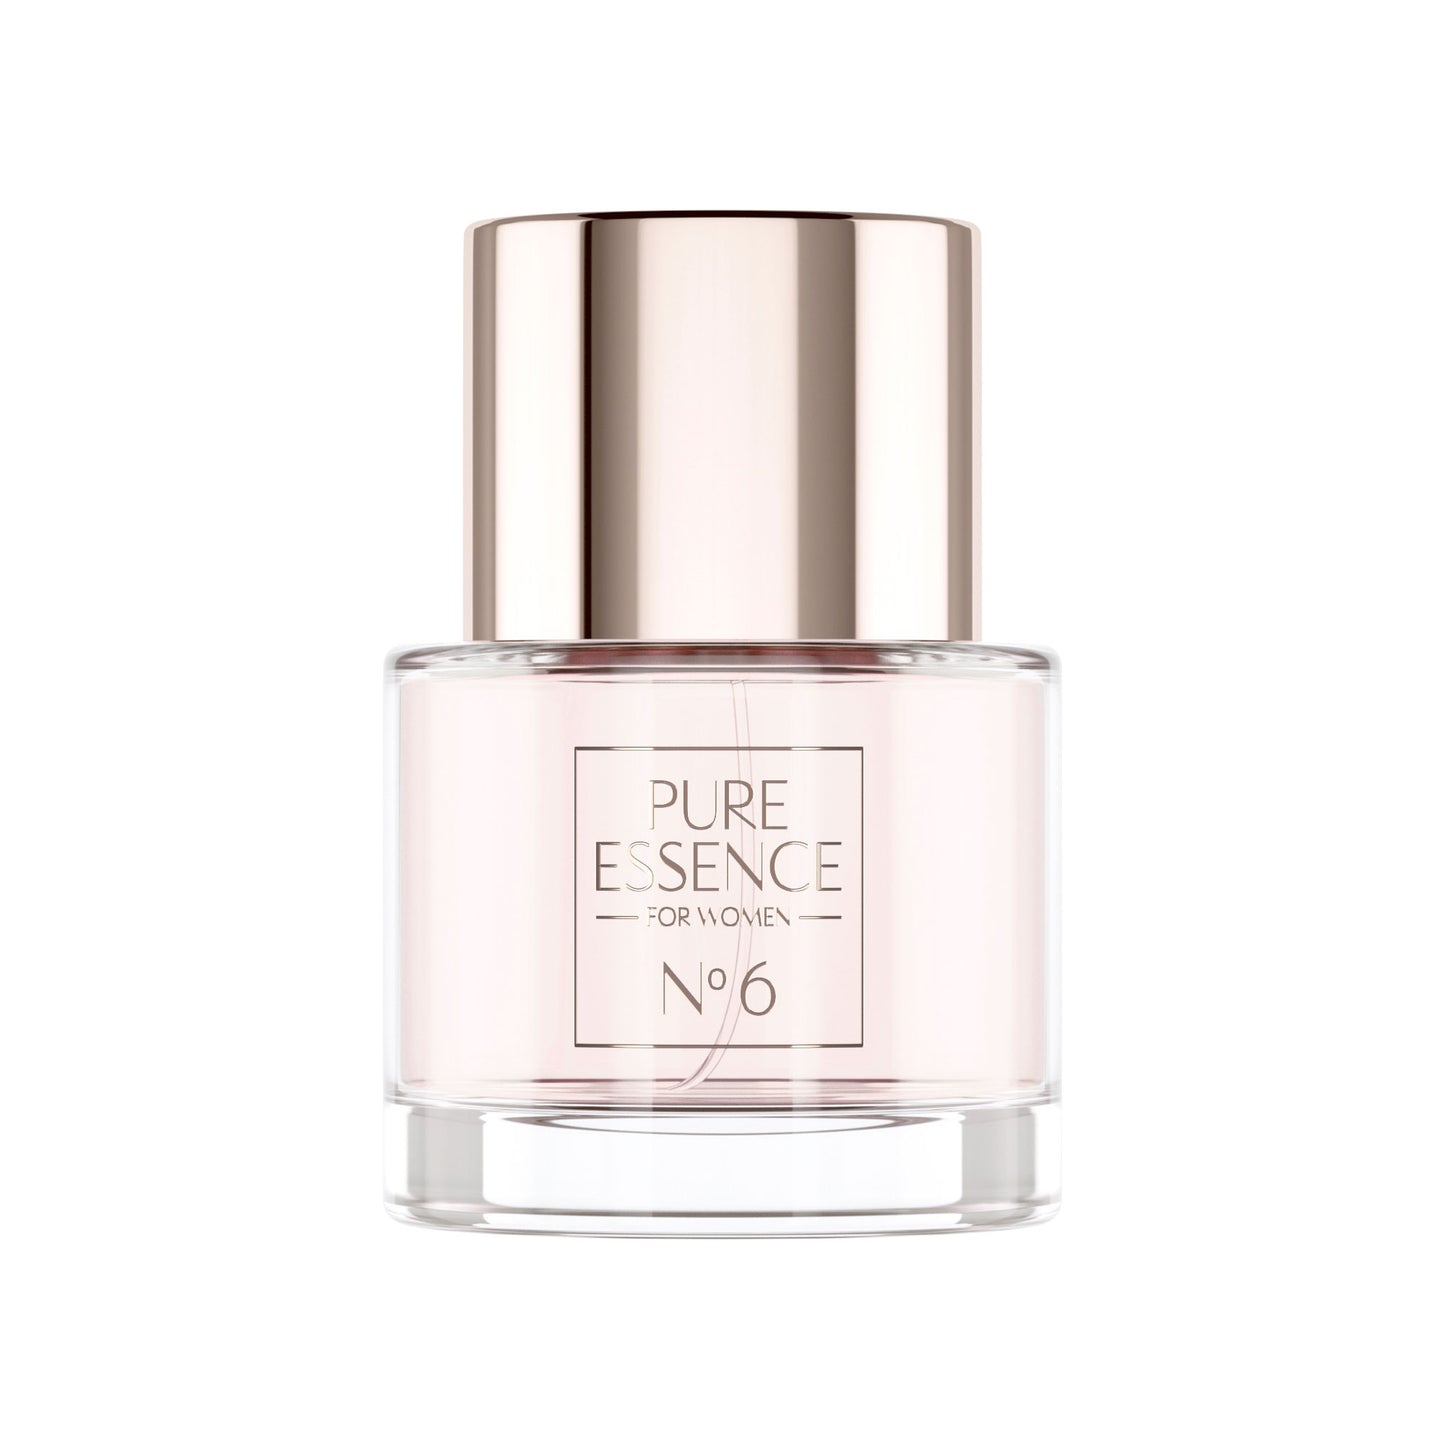 Vitabay Essence Fine Fragrance for Women No. 6 - 50 ml – Eau de Parfum 10% Parfümöl Vaporisateur / S